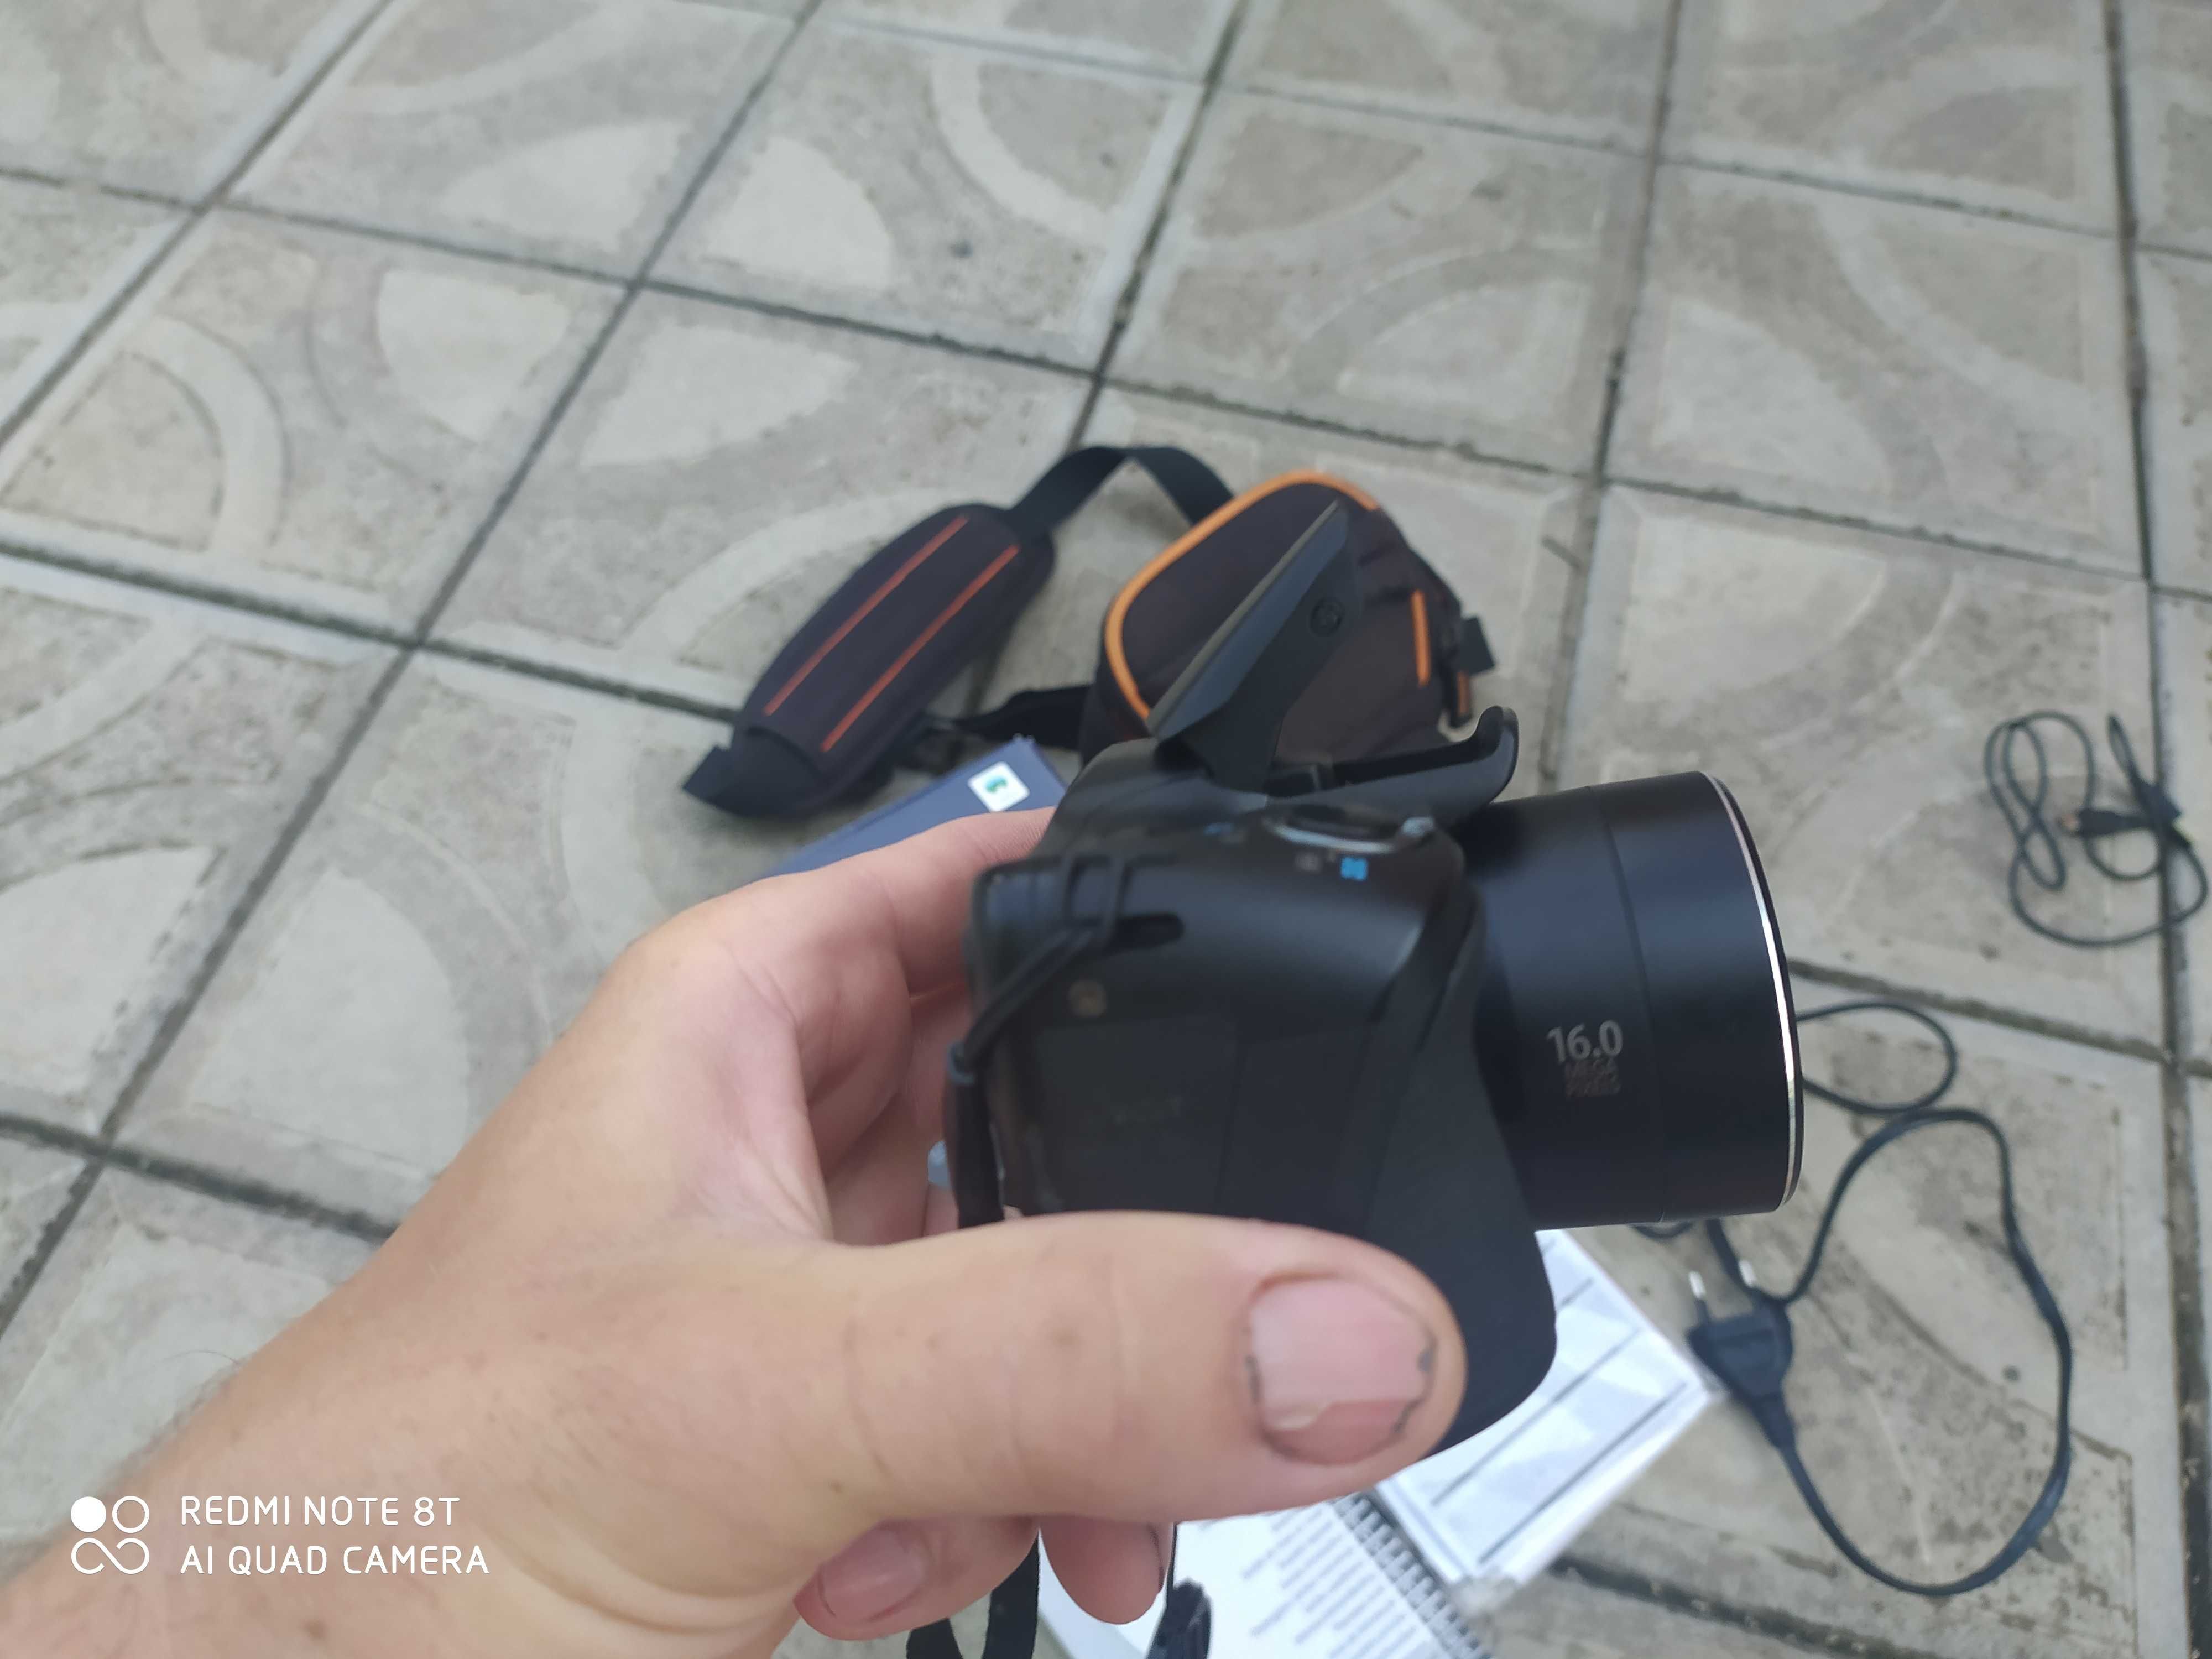 Фотоаппарат Canon PowerShot SX400 IS Black